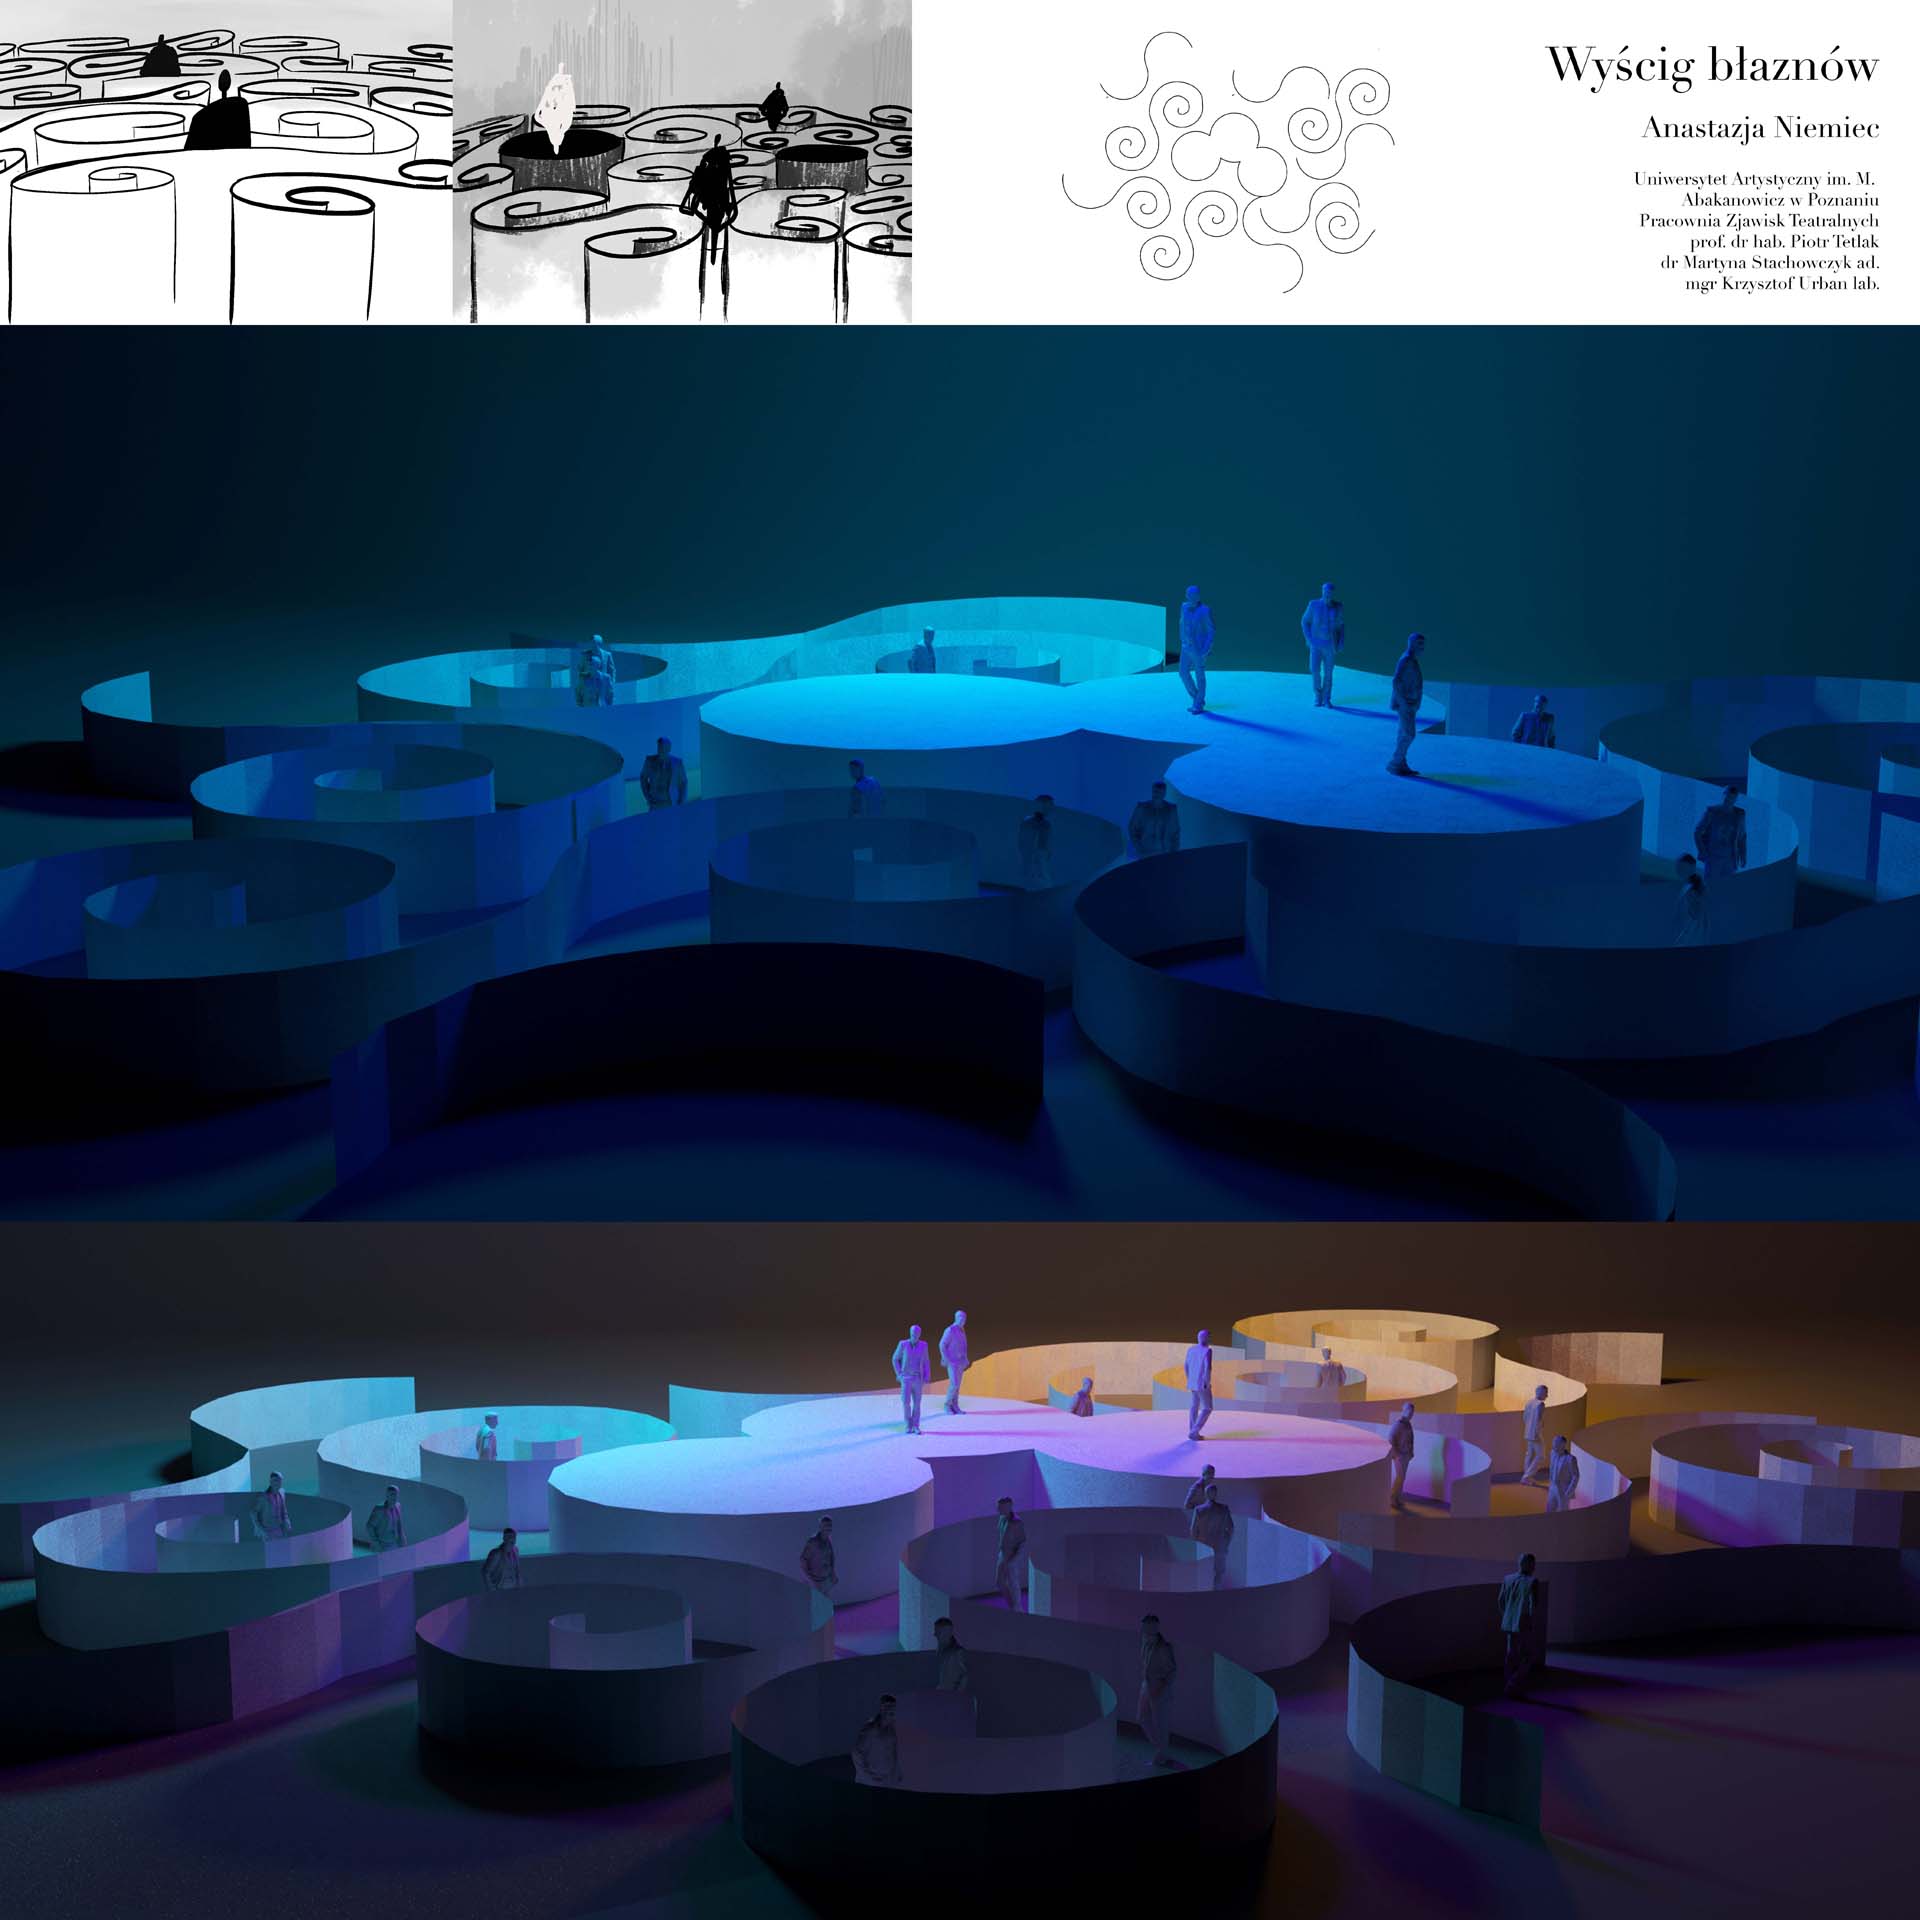 Plansza prezentuje projekt przestrzeni zbudowanej ze zmultiplkowanych obiektów w kształcie litery S tworzących labirynt wokół okrągłej sceny dla muzyków. Na planszy , w górnej części znajdują się trzy niewielkie szkice, nazwisko autora, tytuł, nazwa pracowni i dwie duże wizualizacje, w których dominuje kolor niebieski